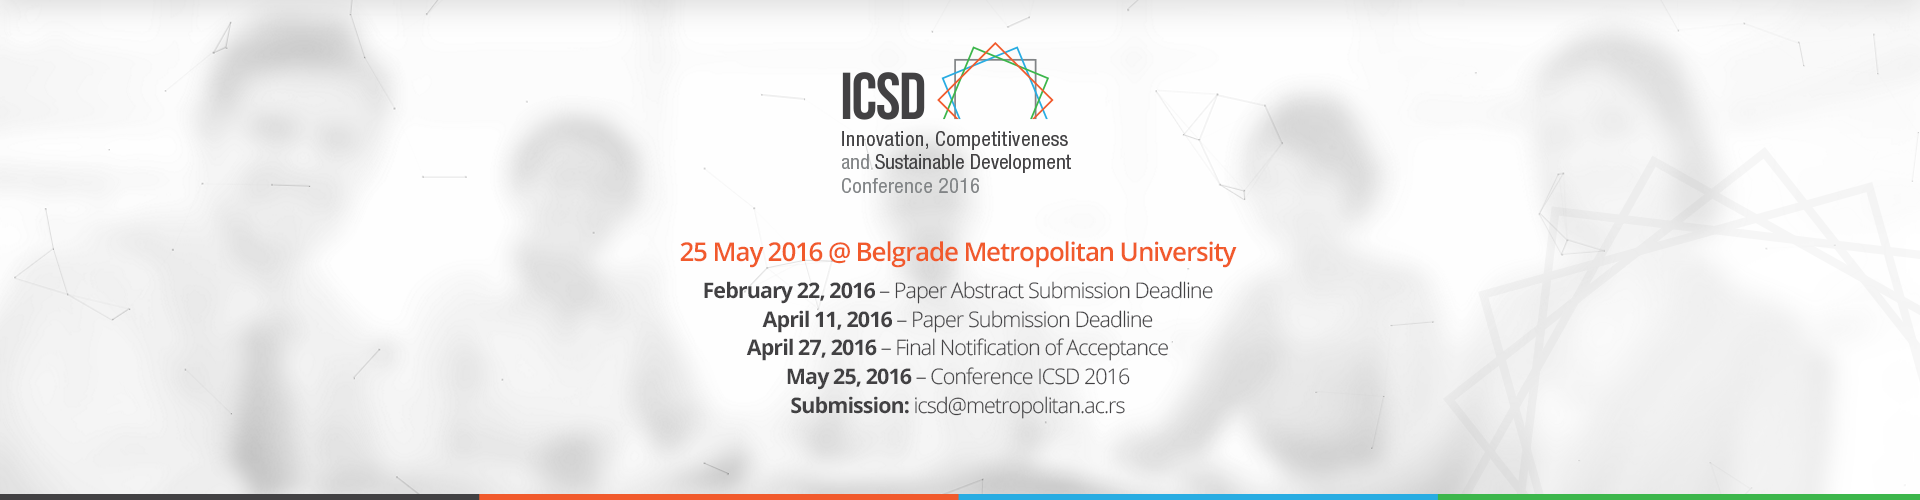 Veliko interesovanje za ICSD konferenciju